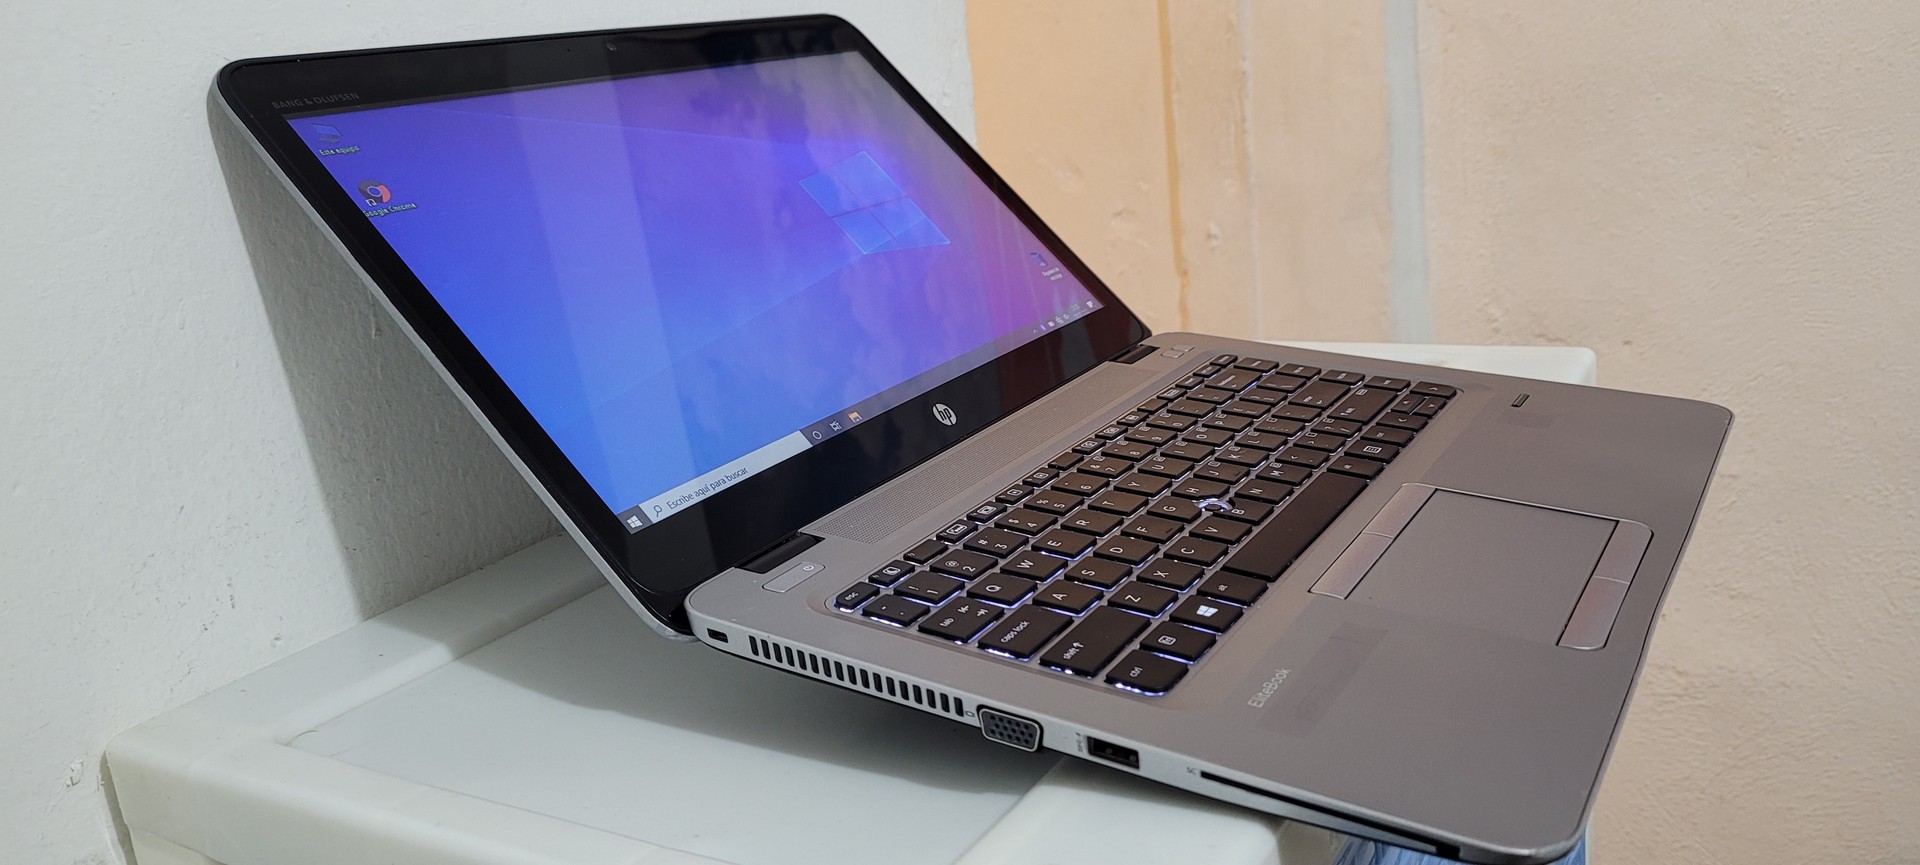 Laptop hp G3 14 Pulg Core i5 6ta Gen Ram 8gb ddr4 Disco 500gb Wifi 1